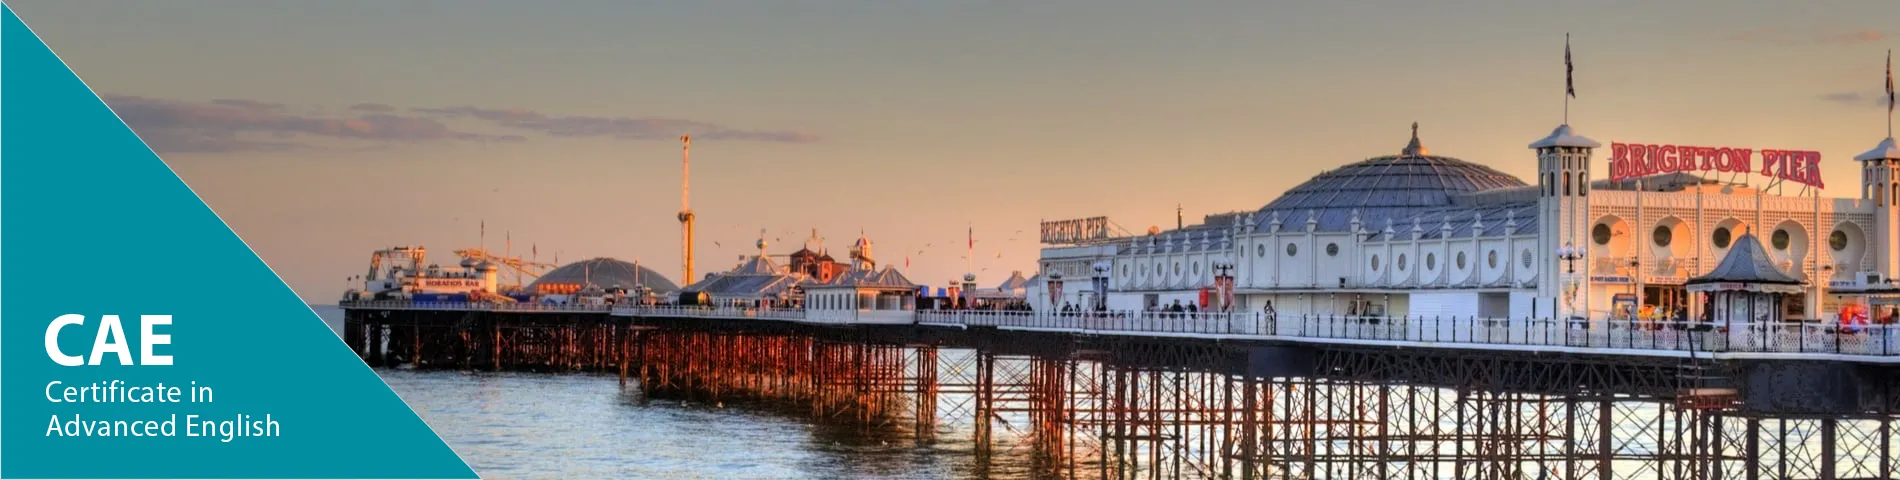 Brighton - 